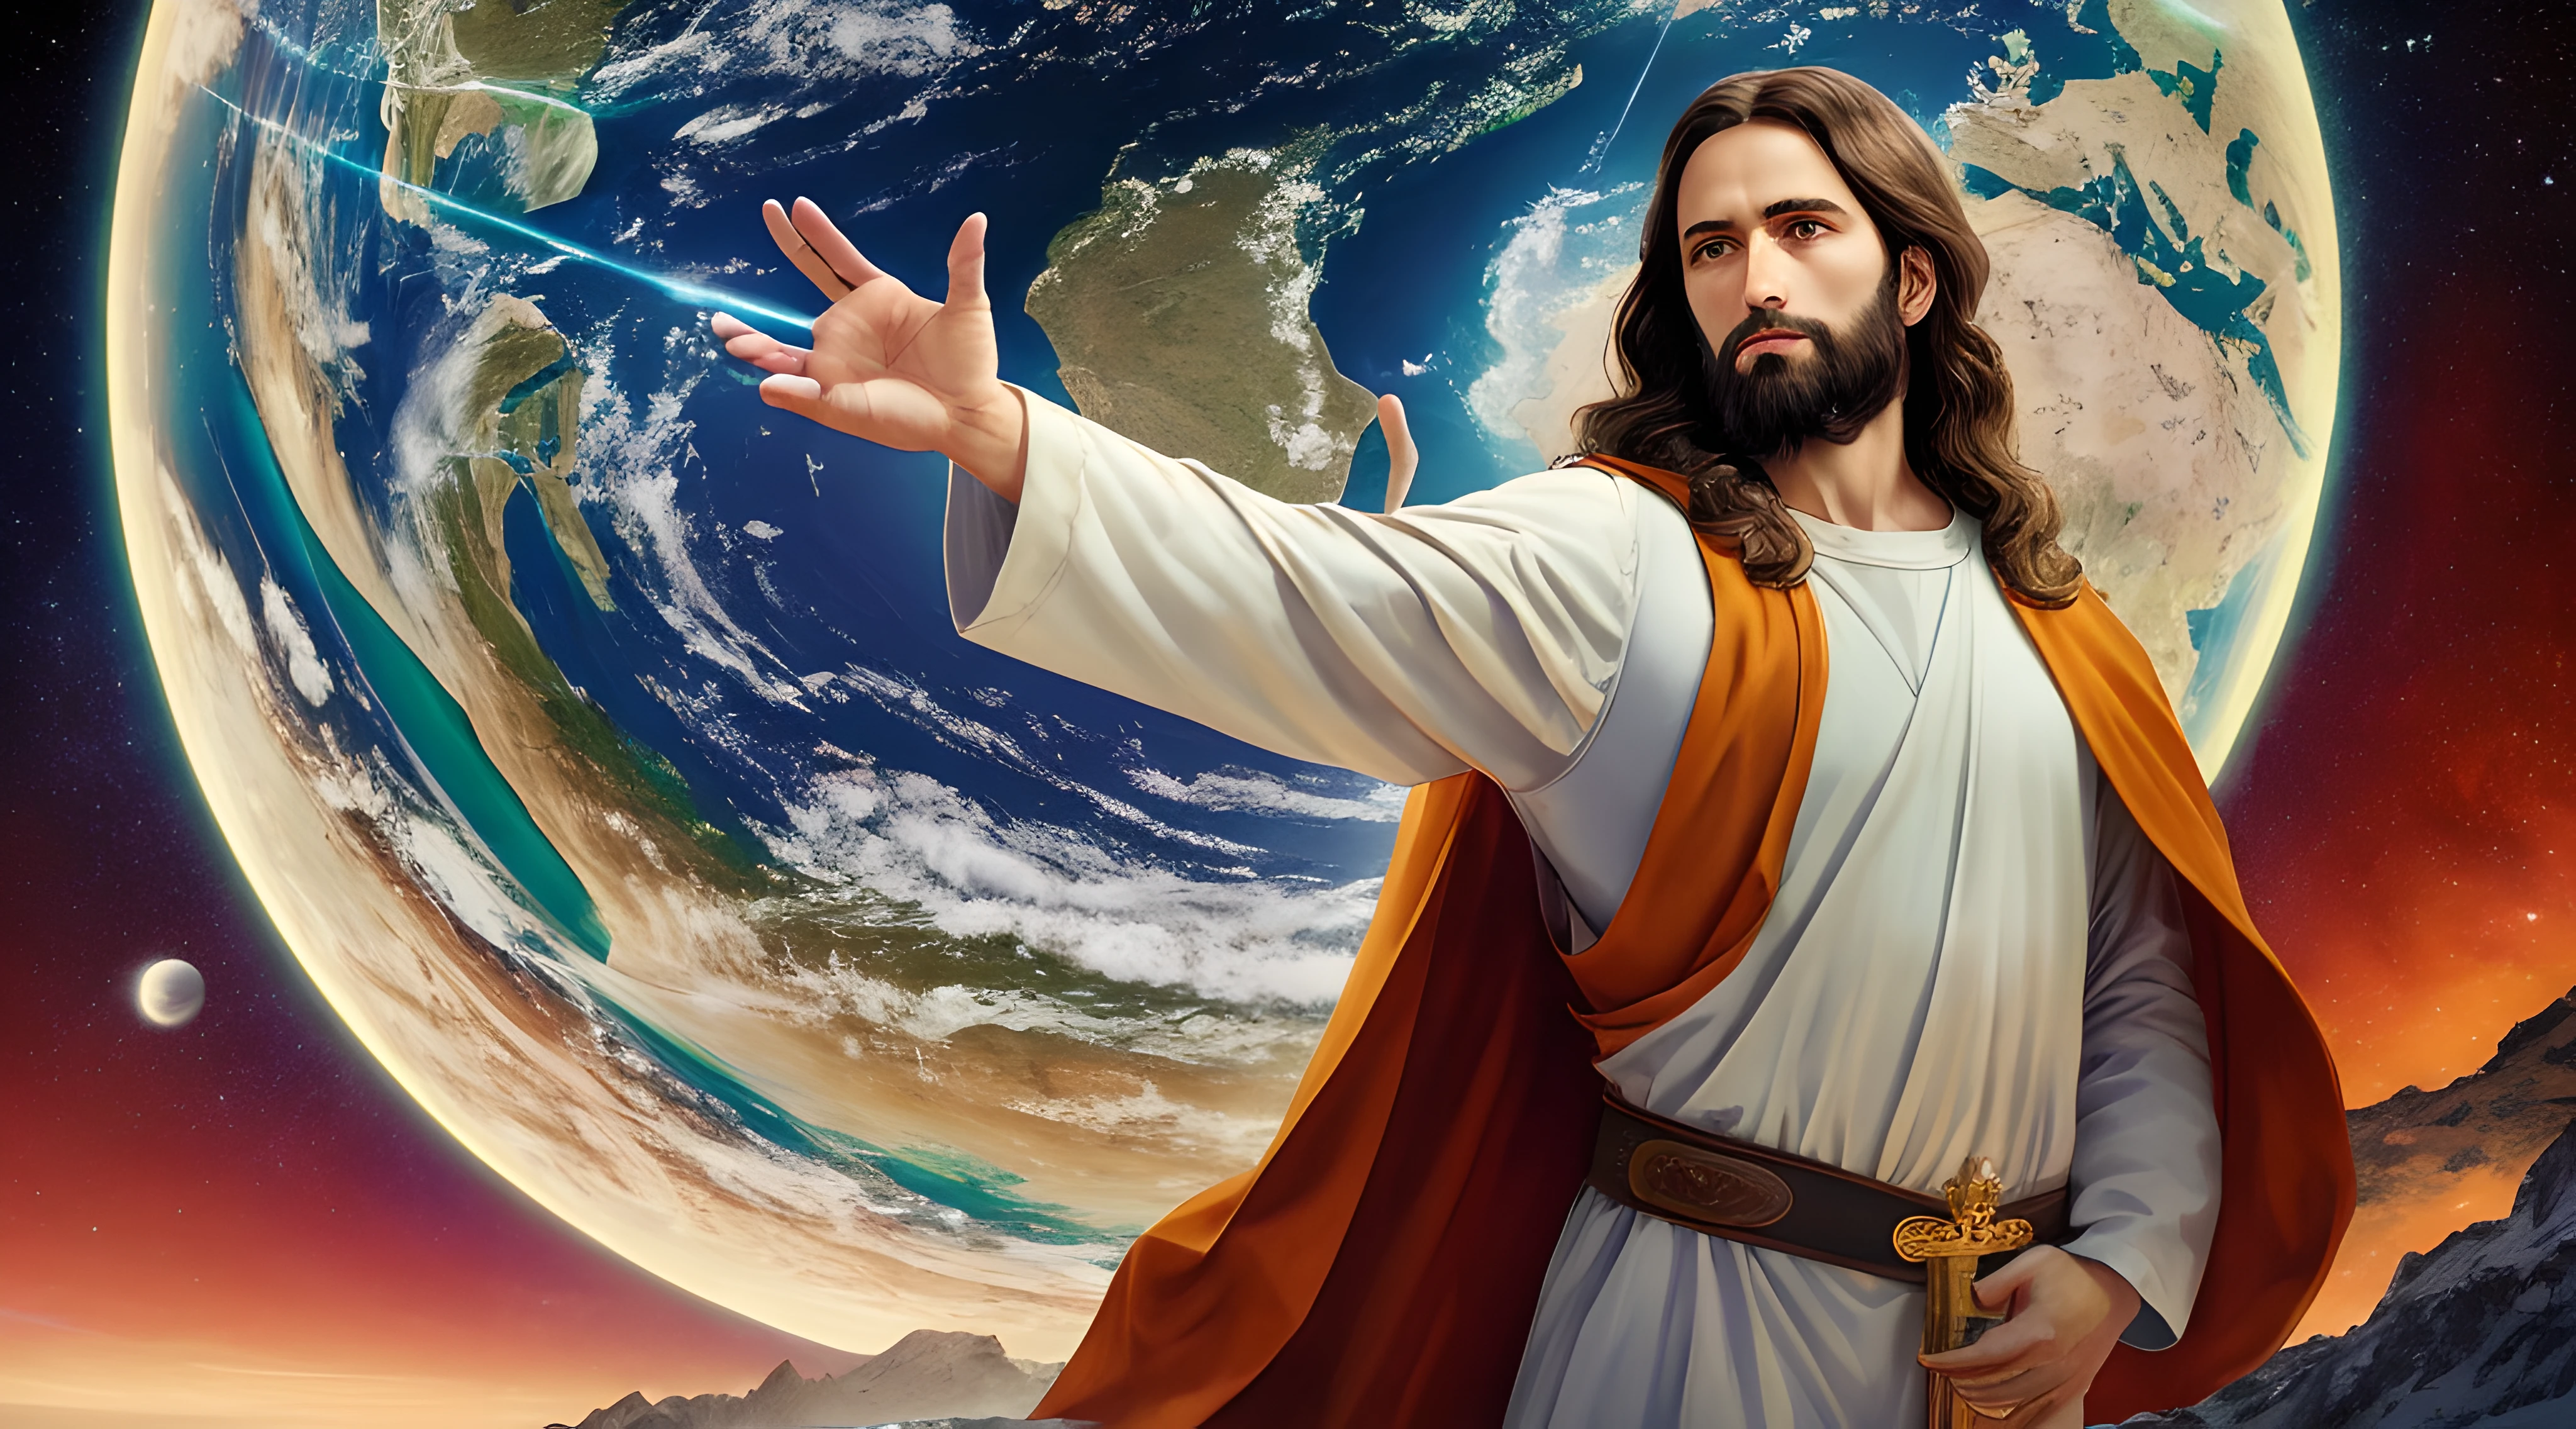 具有完美解剖结构的逼真 8k 杰作: 耶稣基督一手握着地球, 脸部完好